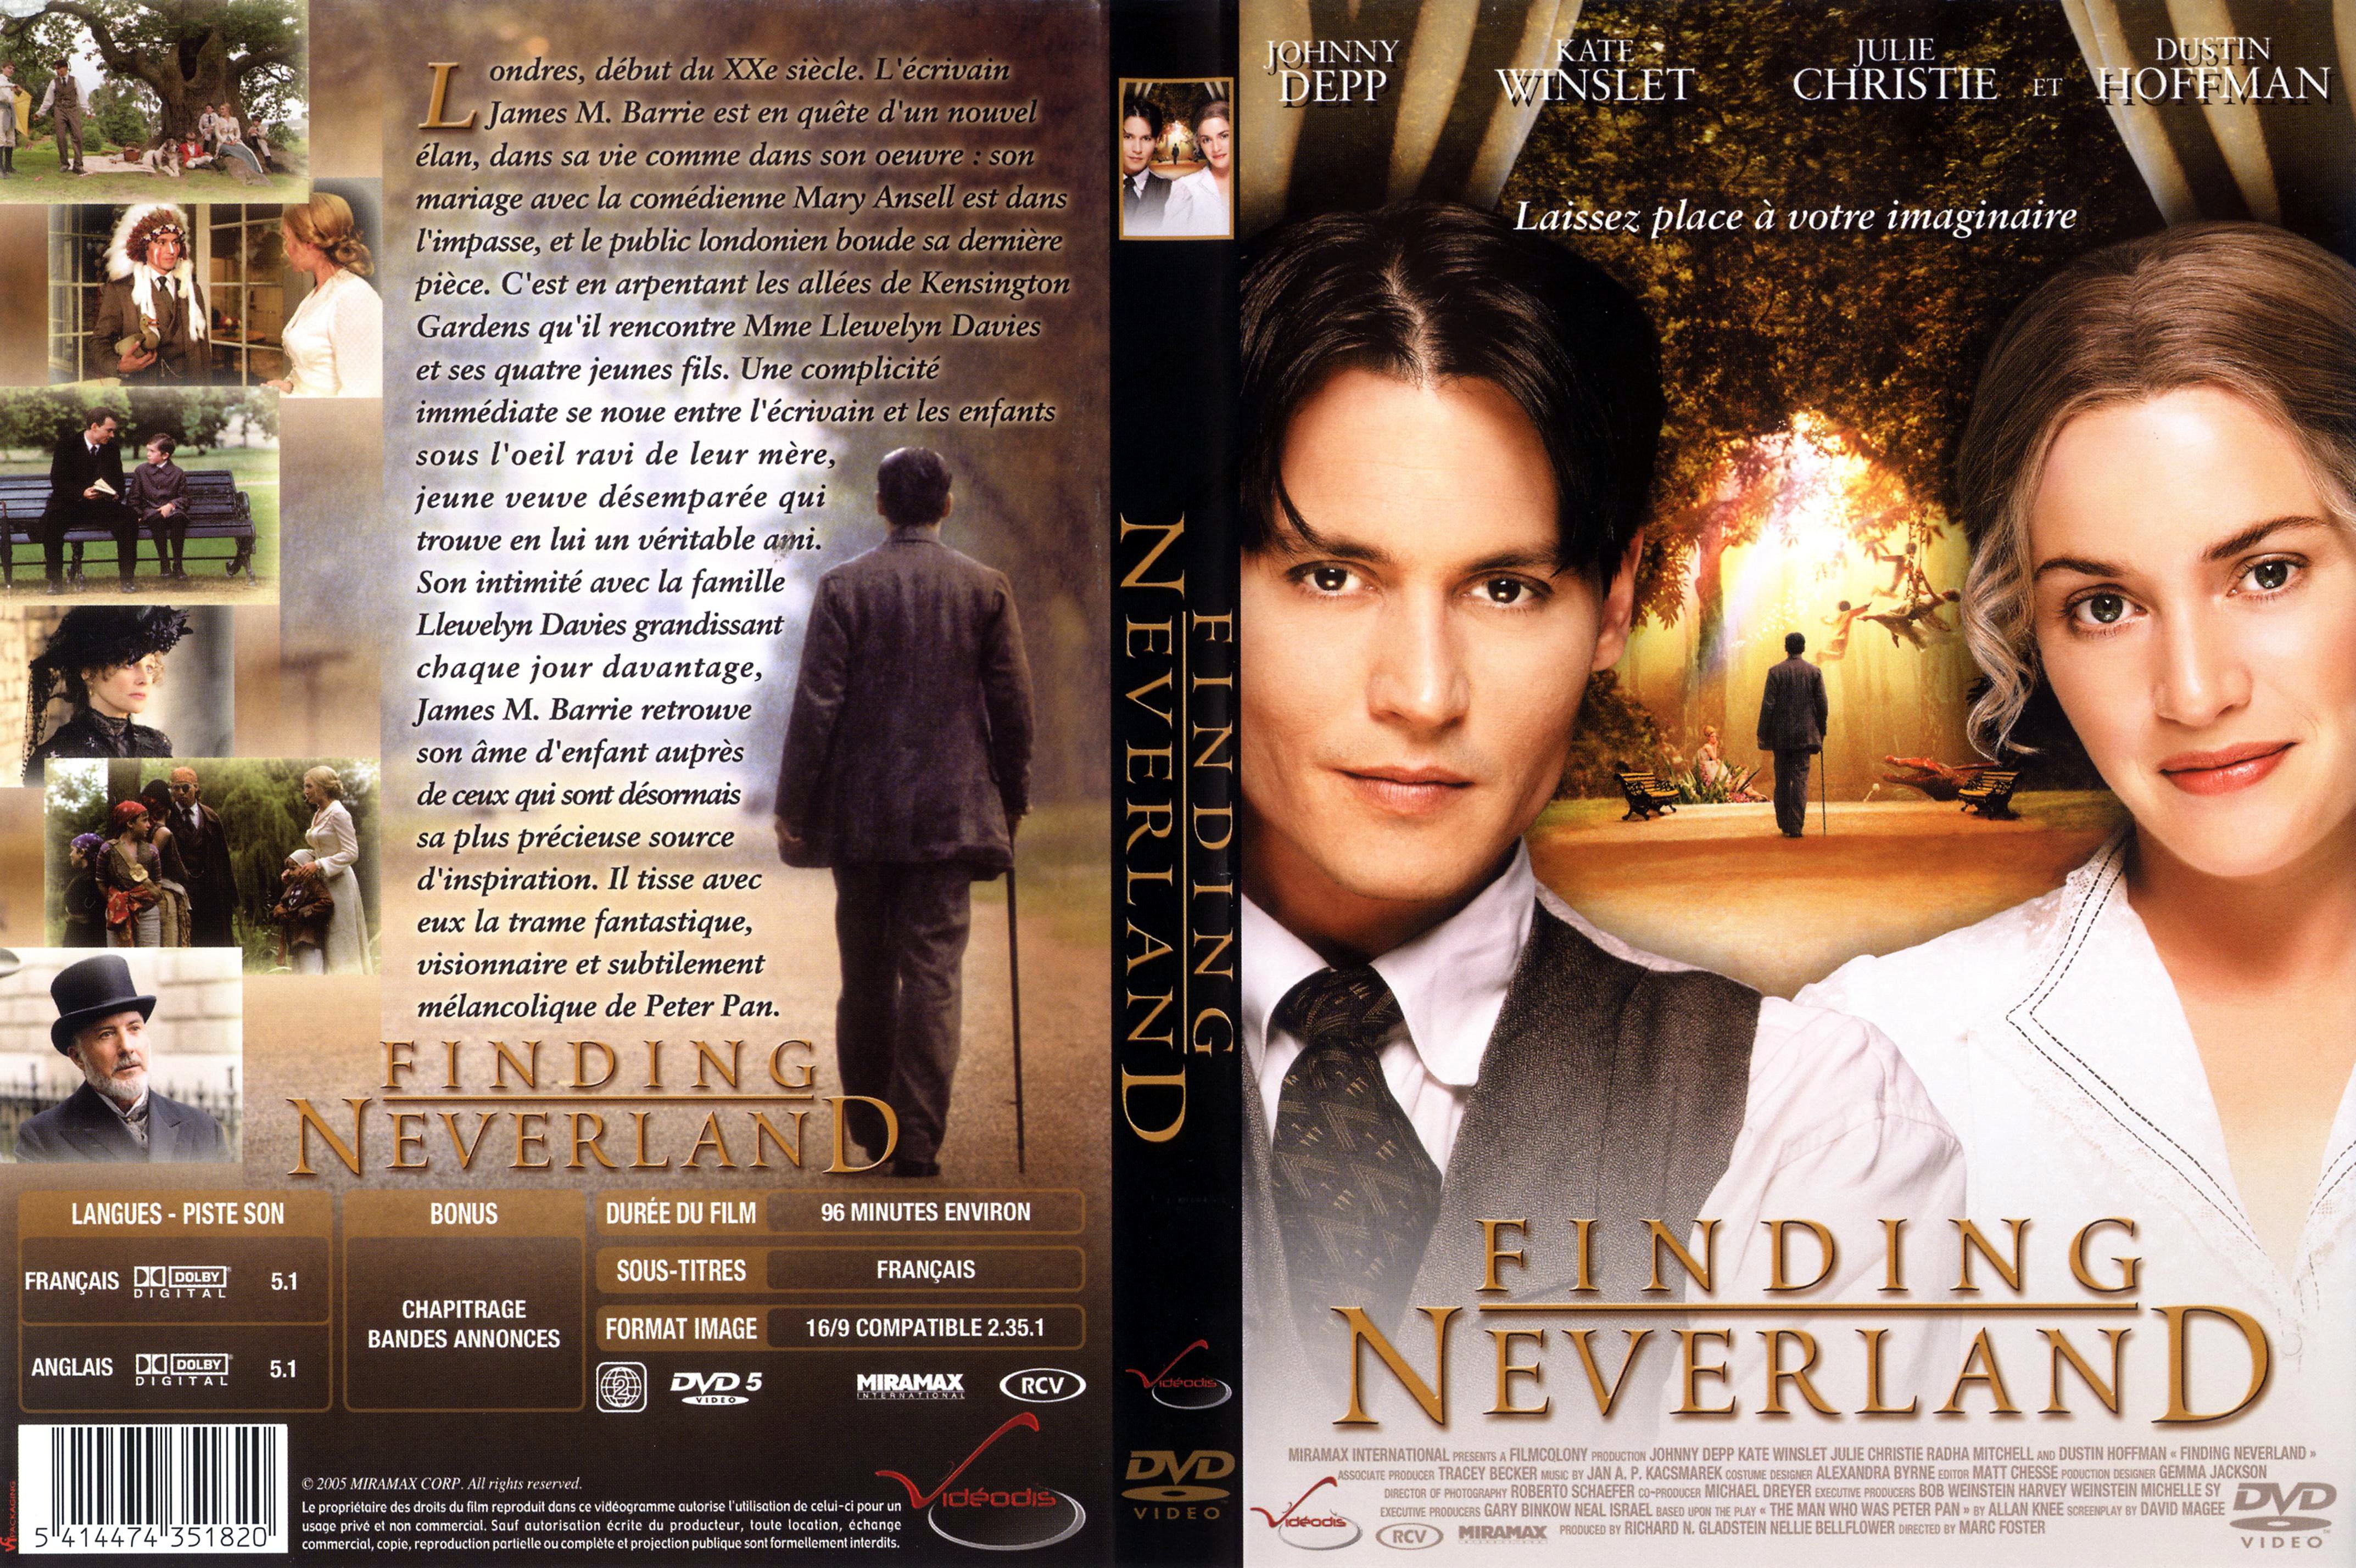 Jaquette DVD Neverland v2